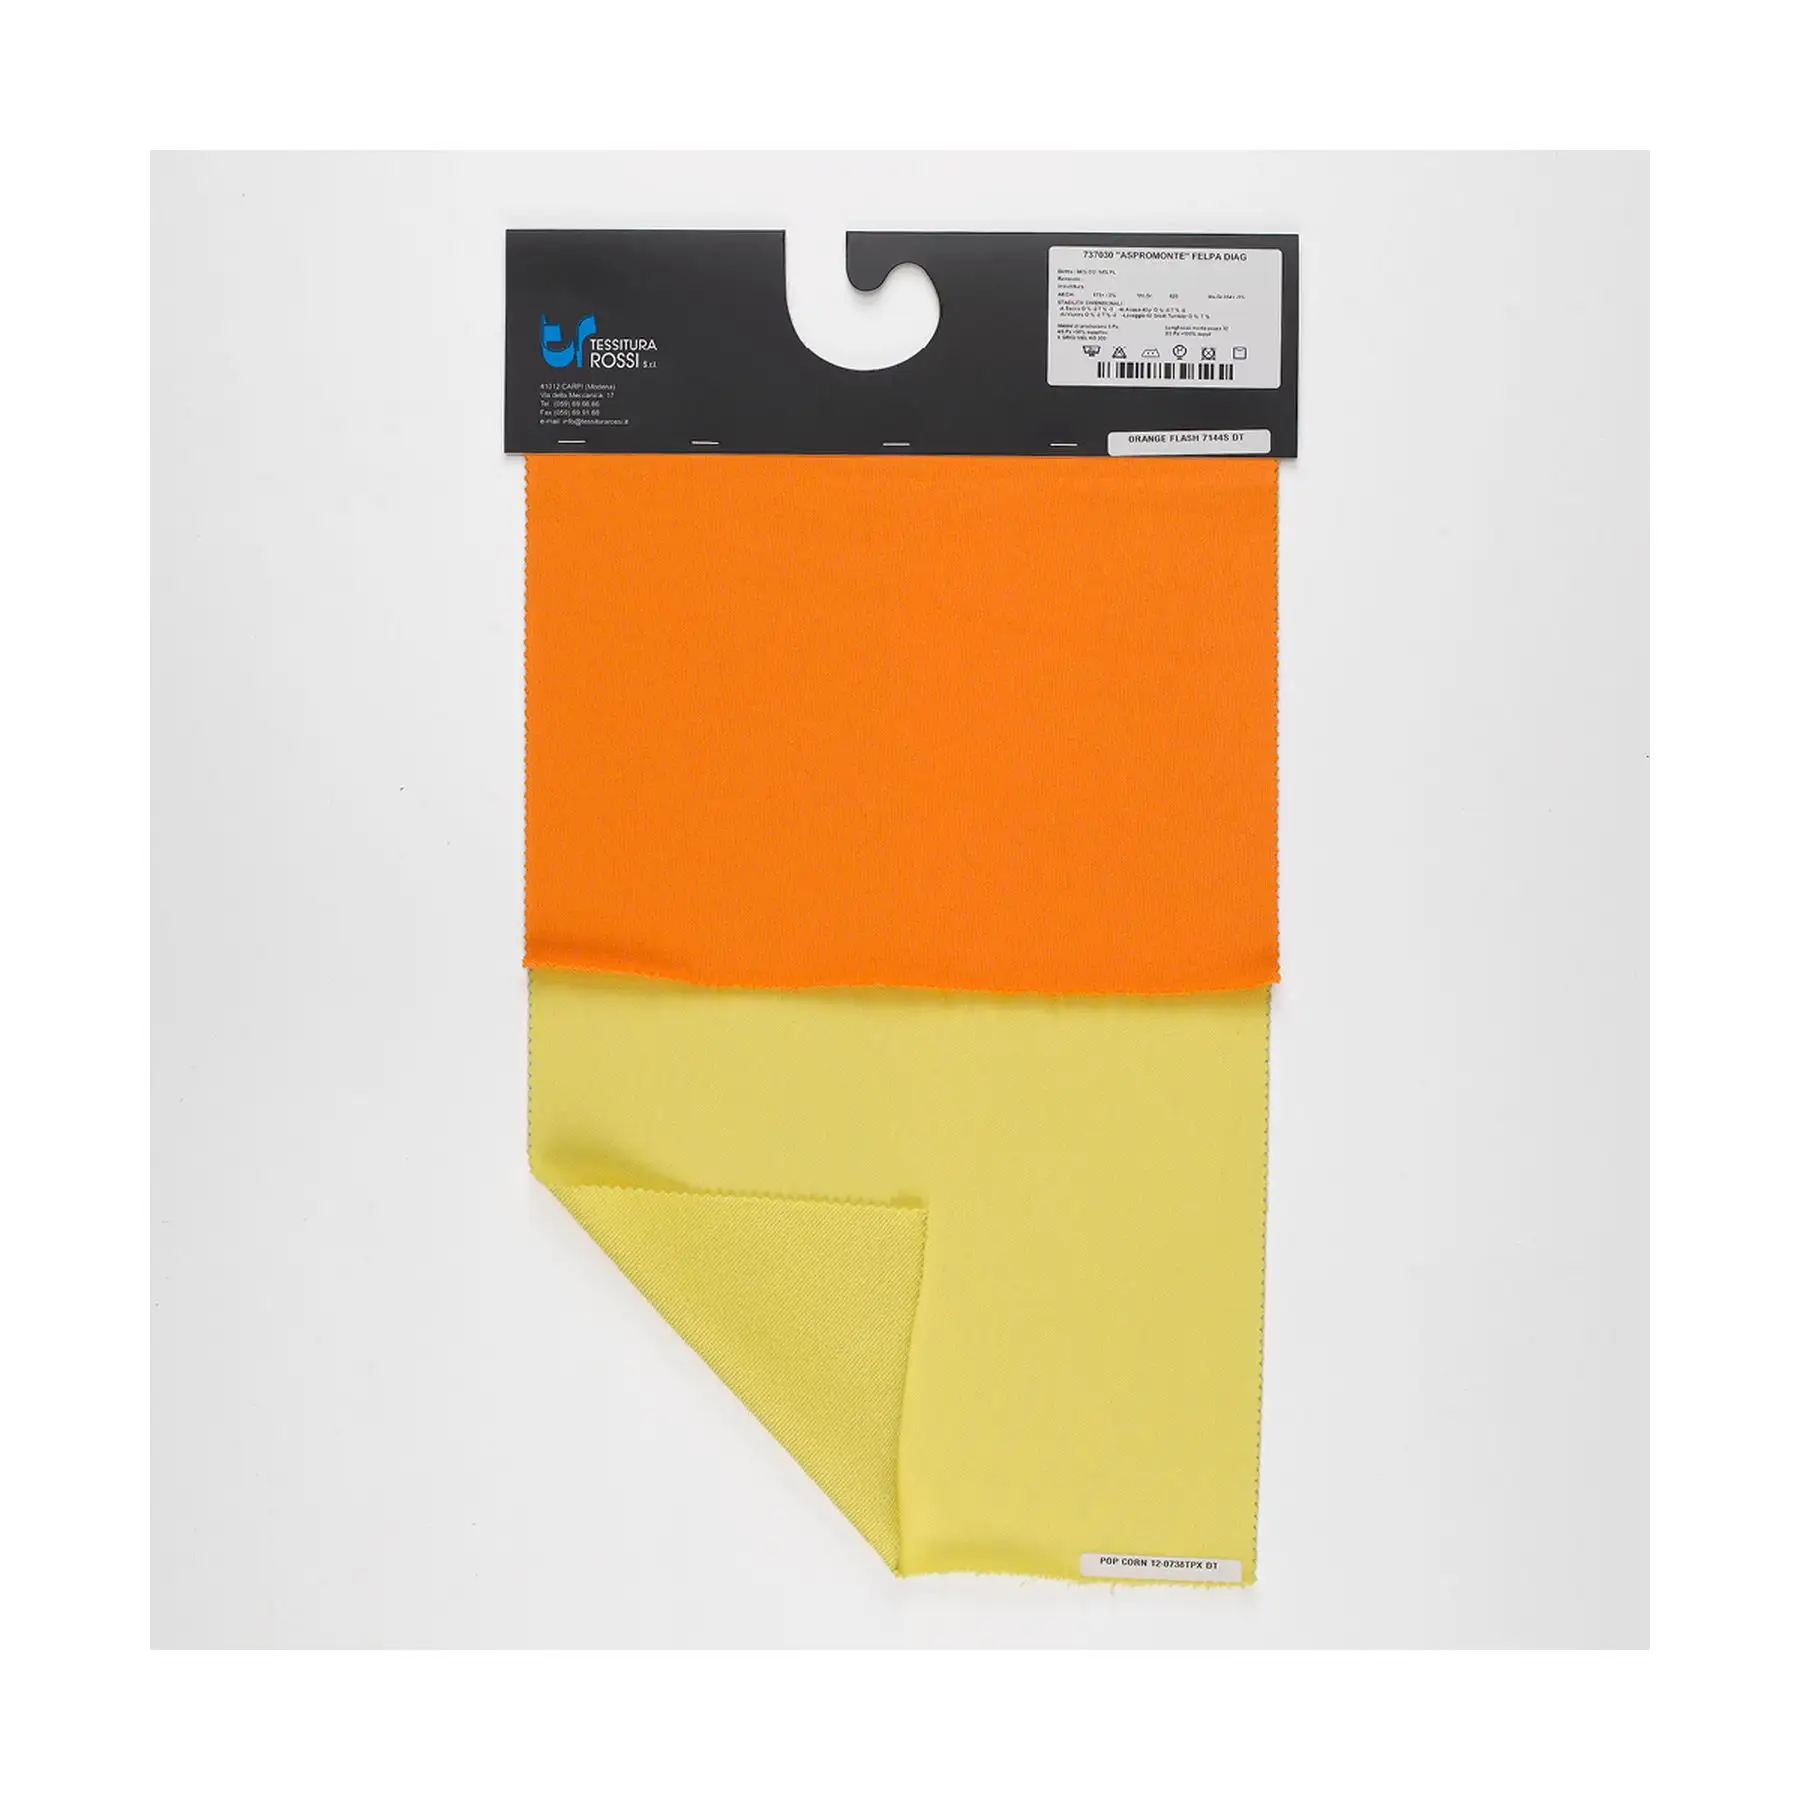 Tissu diagonal en polyester coton durable mélangé de qualité supérieure-Confort élégant pour les modes de vie actifs-Garde-robe polyvalente indispensable